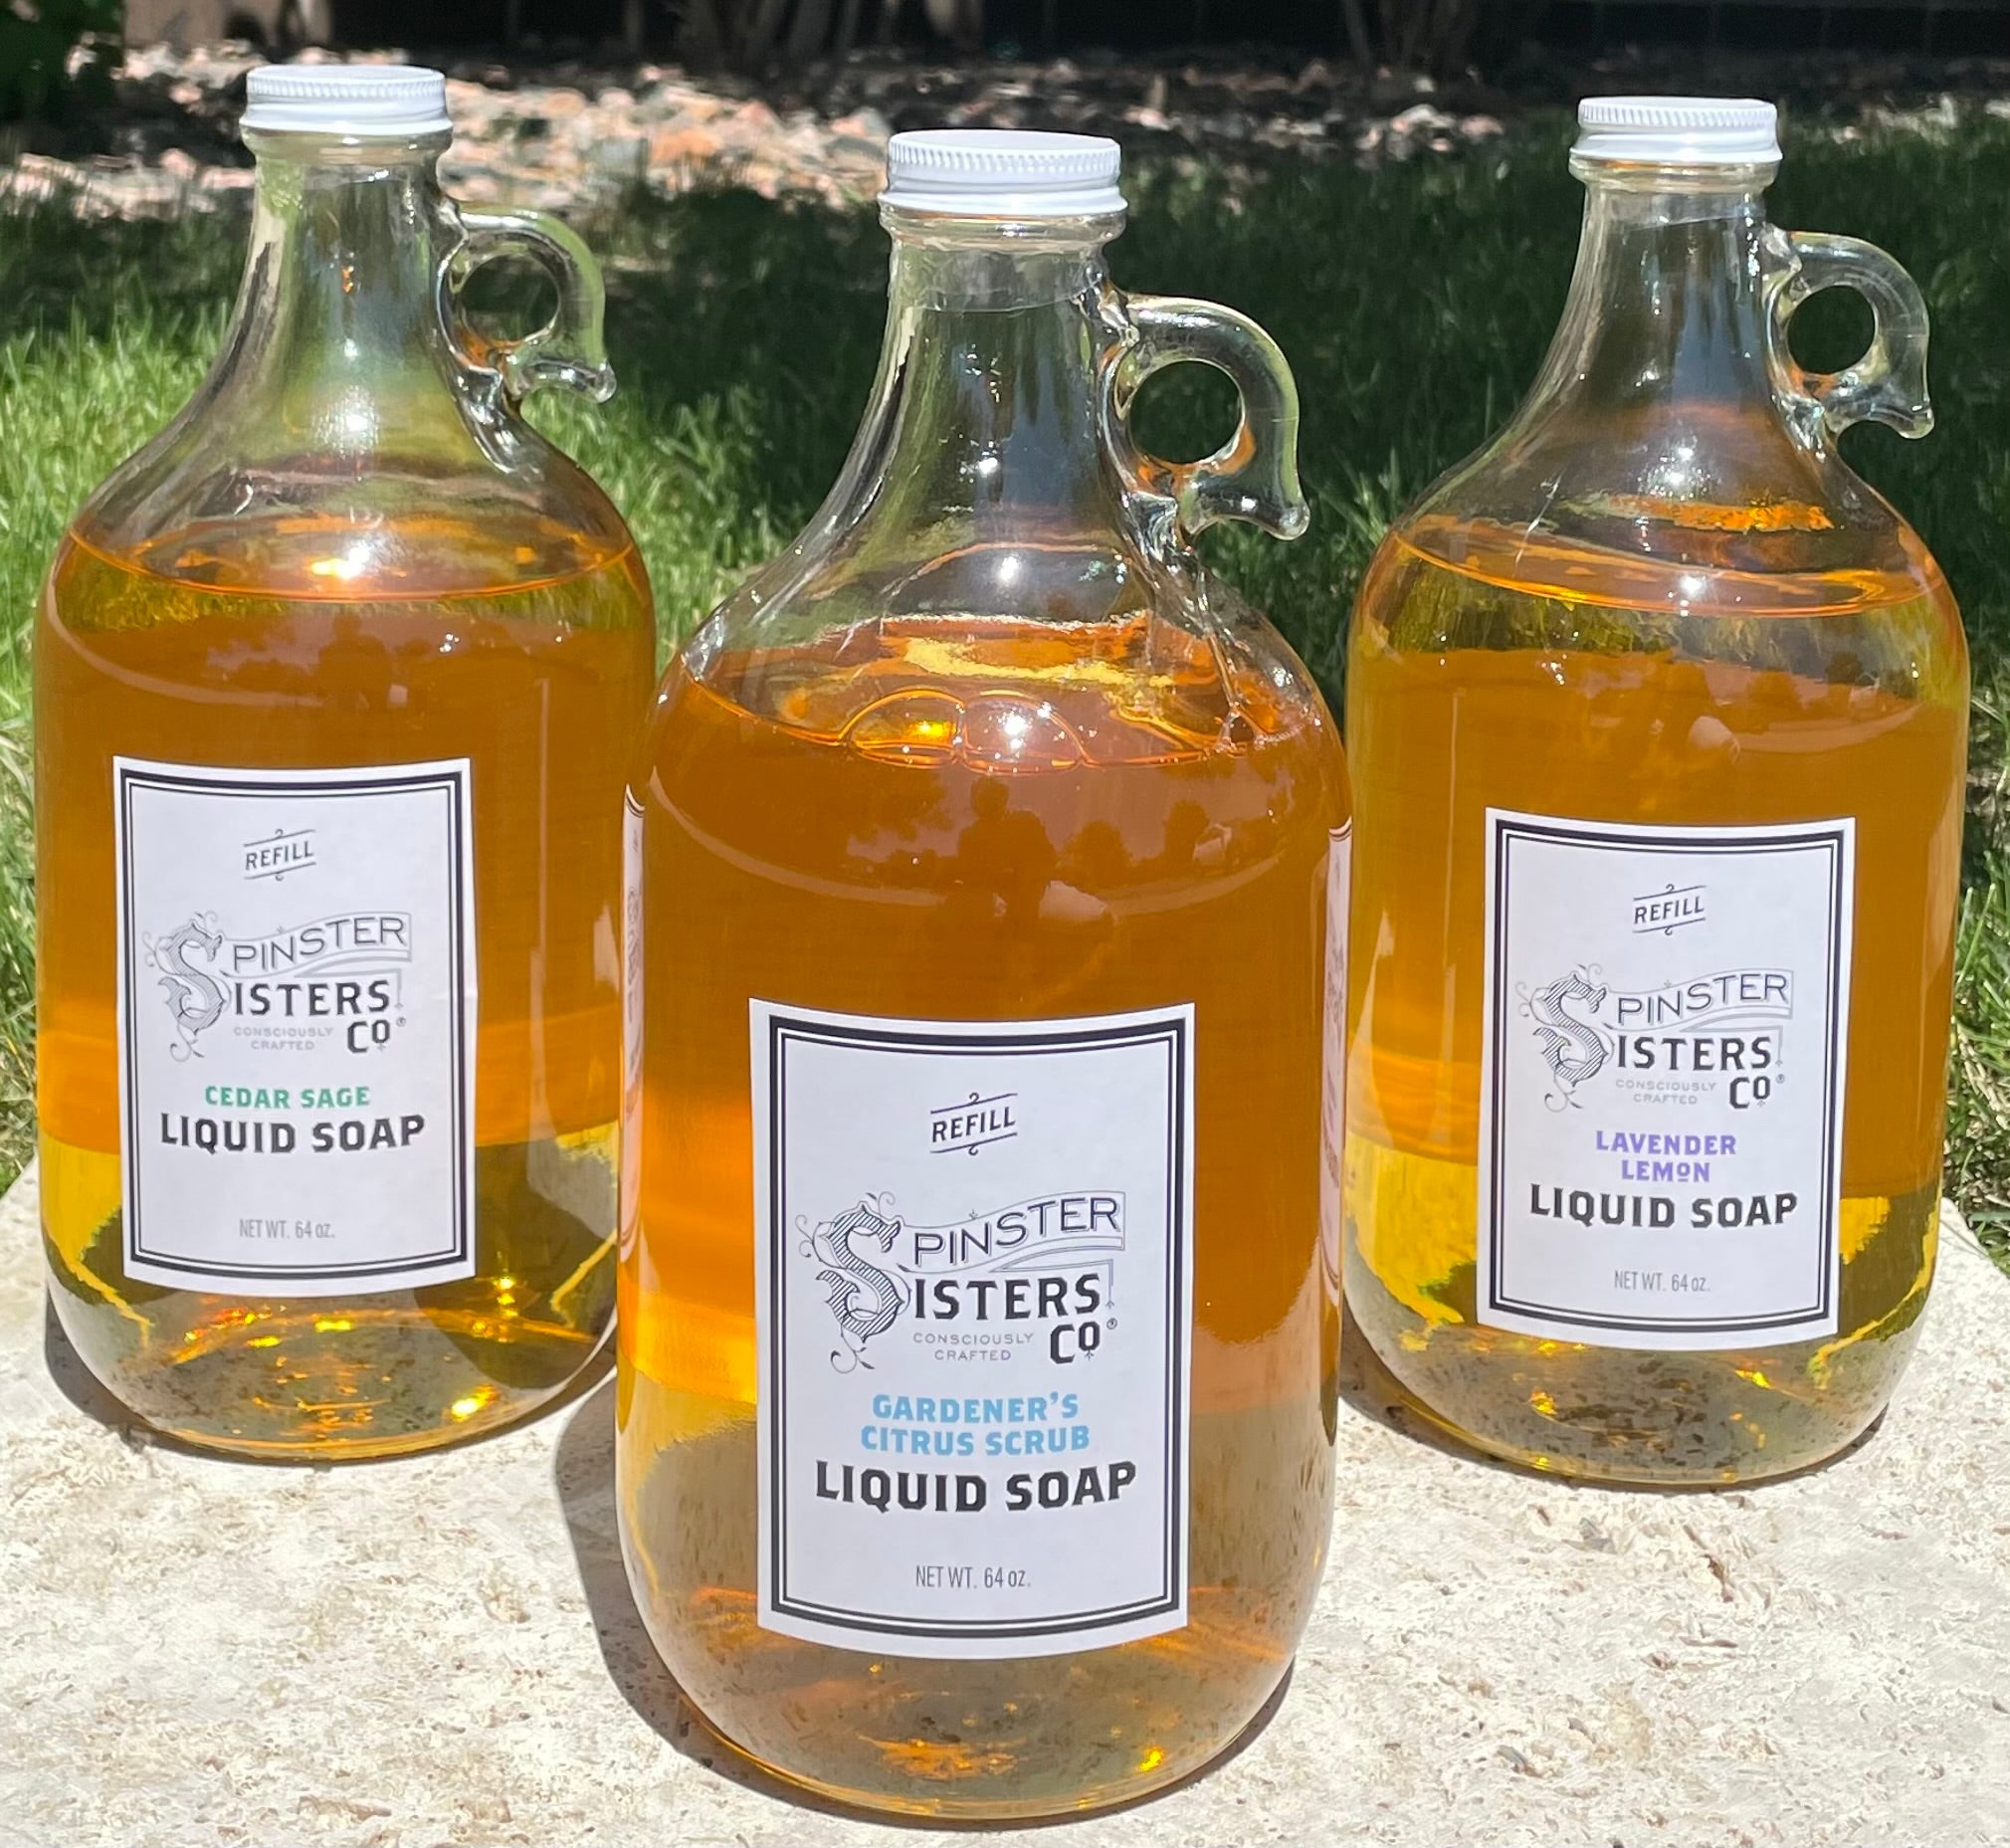 Gardener's Citrus Scrub Liquid Soap Refill